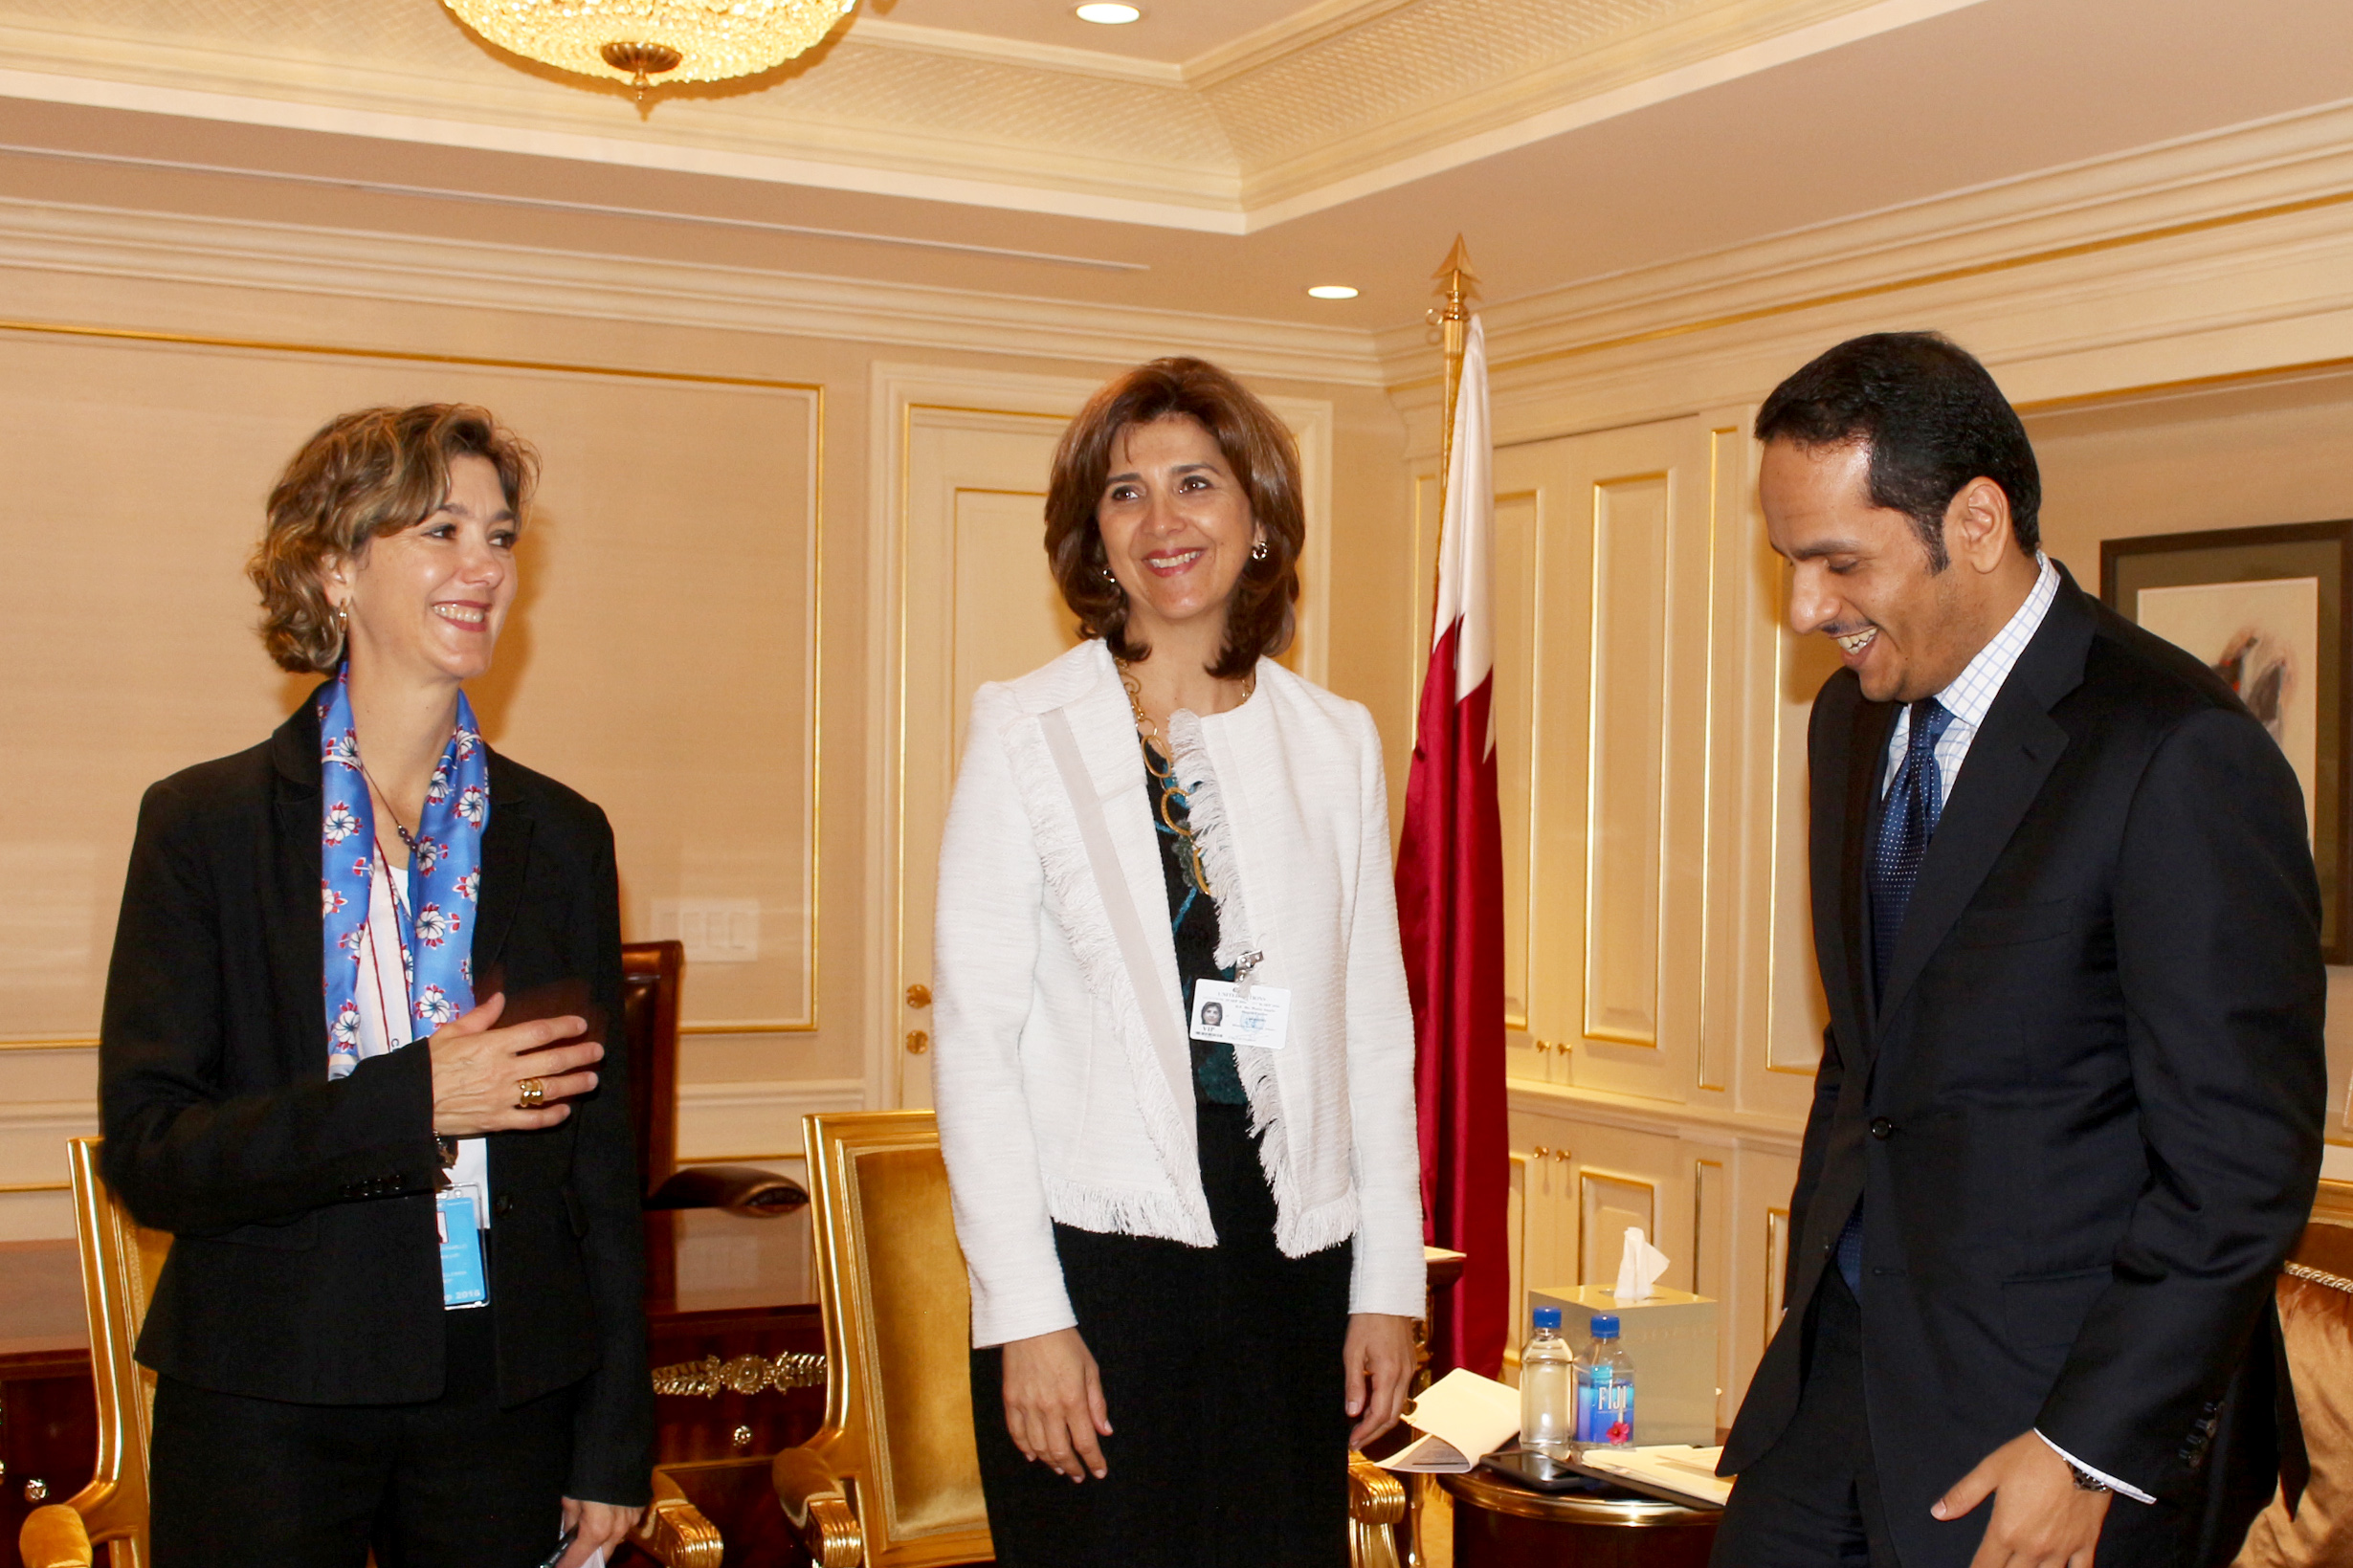 Los Ministros de Relaciones Exteriores de Colombia, María Ángela Holguín y de Qatar, Jeque Mohammed Abdulrahman Bin Jassim Al-Thani, se reunieron este miércoles 21 de septiembre, en el marco del 71 periodo de sesiones de la Asamblea General de las Naciones Unidas que se lleva a cabo en Nueva York.